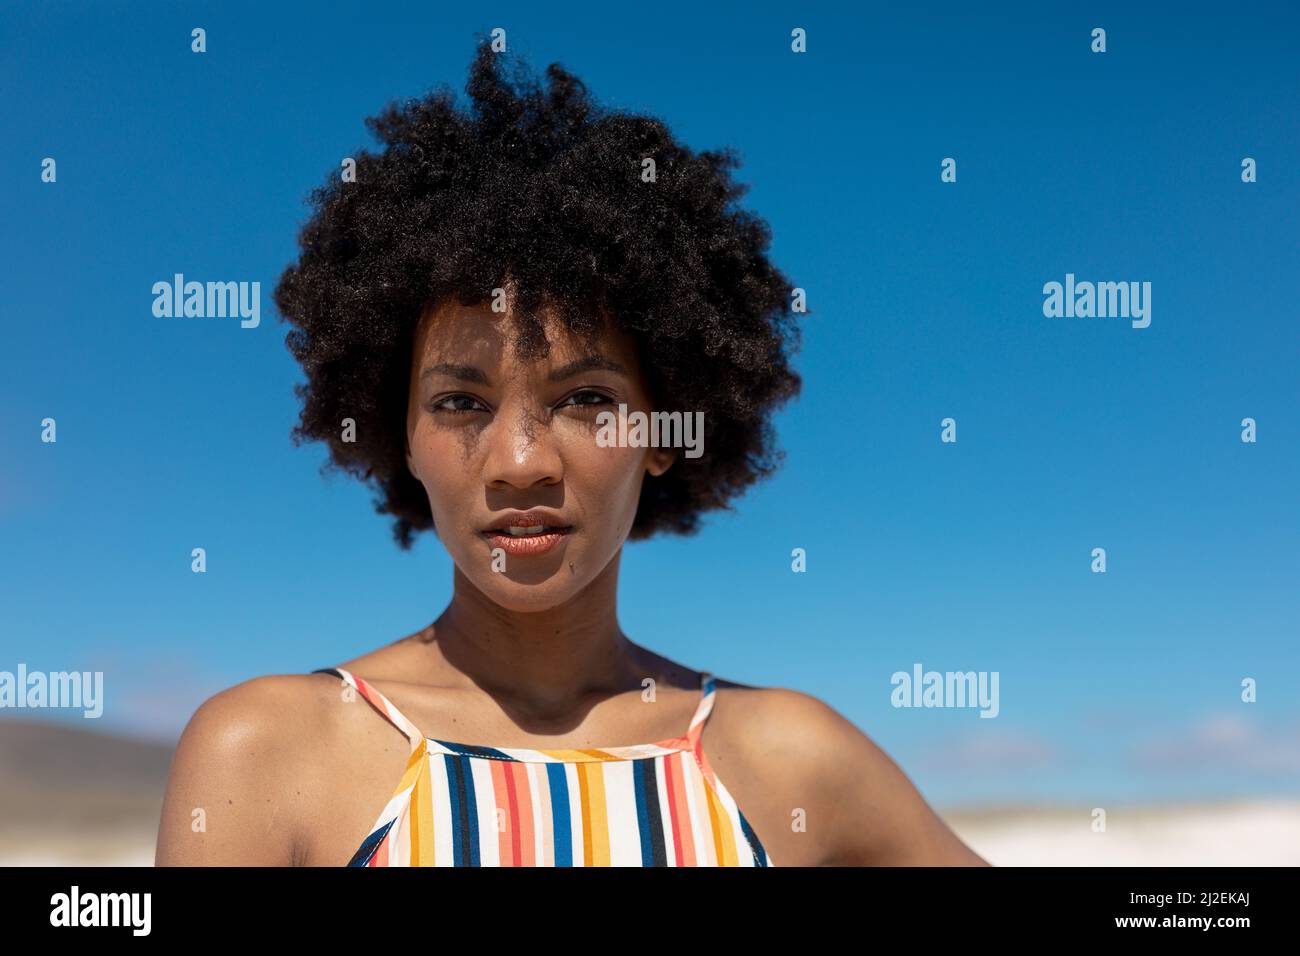 Porträt einer selbstbewussten jungen afroamerikanischen Frau mit Afro-Frisur gegen blauen Himmel Stockfoto